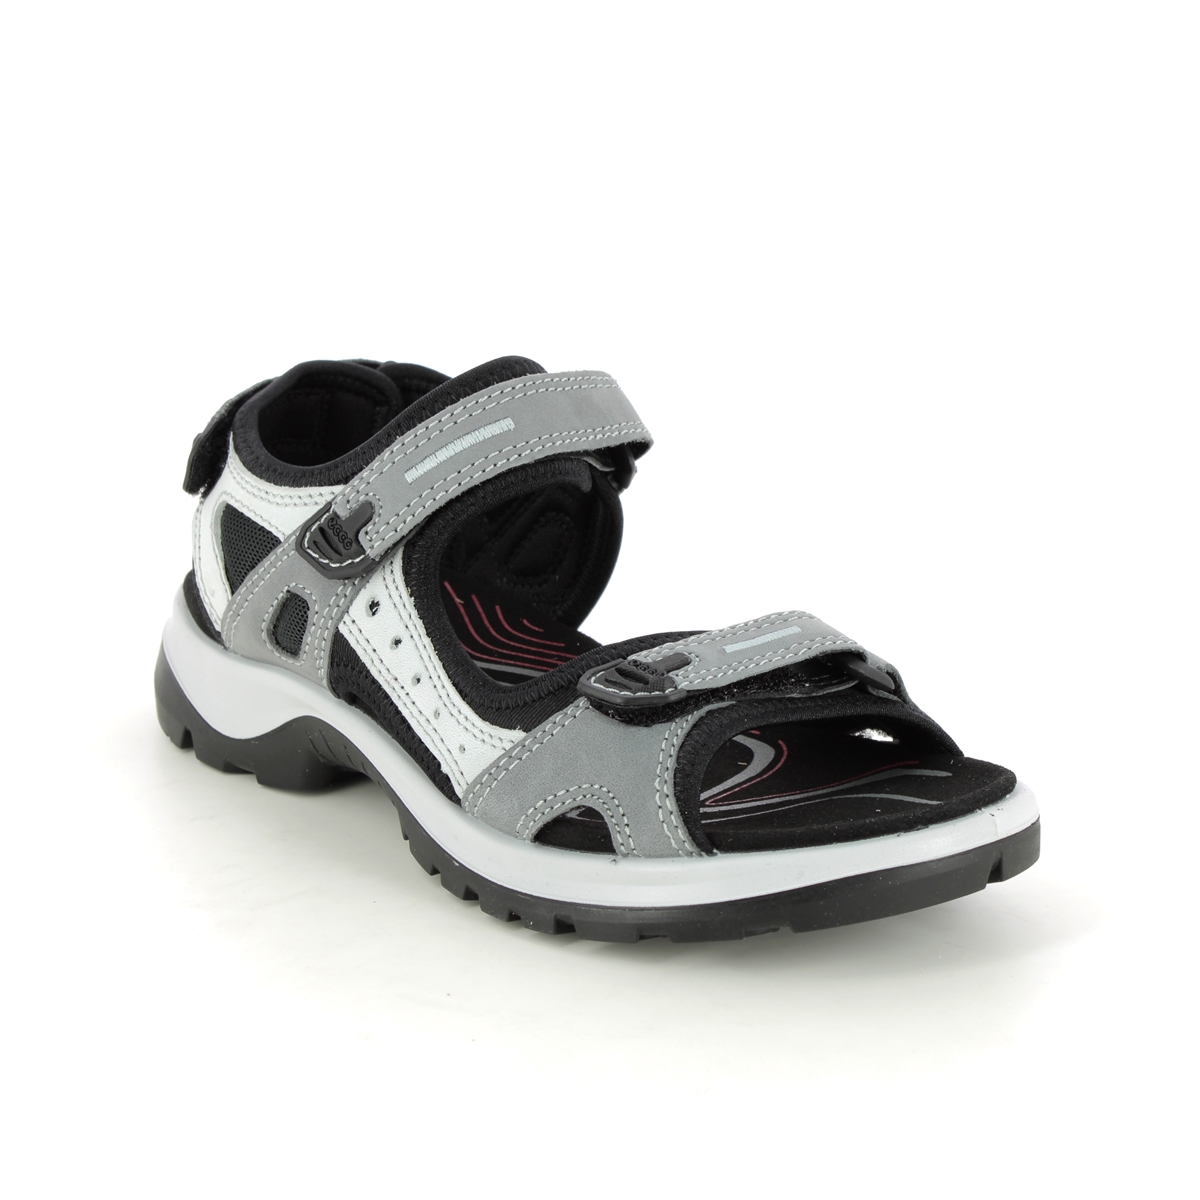 Ecco Offroad Lady Grey Nubuck Womens Walking Sandals 069563-02244 In Size 42 In Plain Grey Nubuck